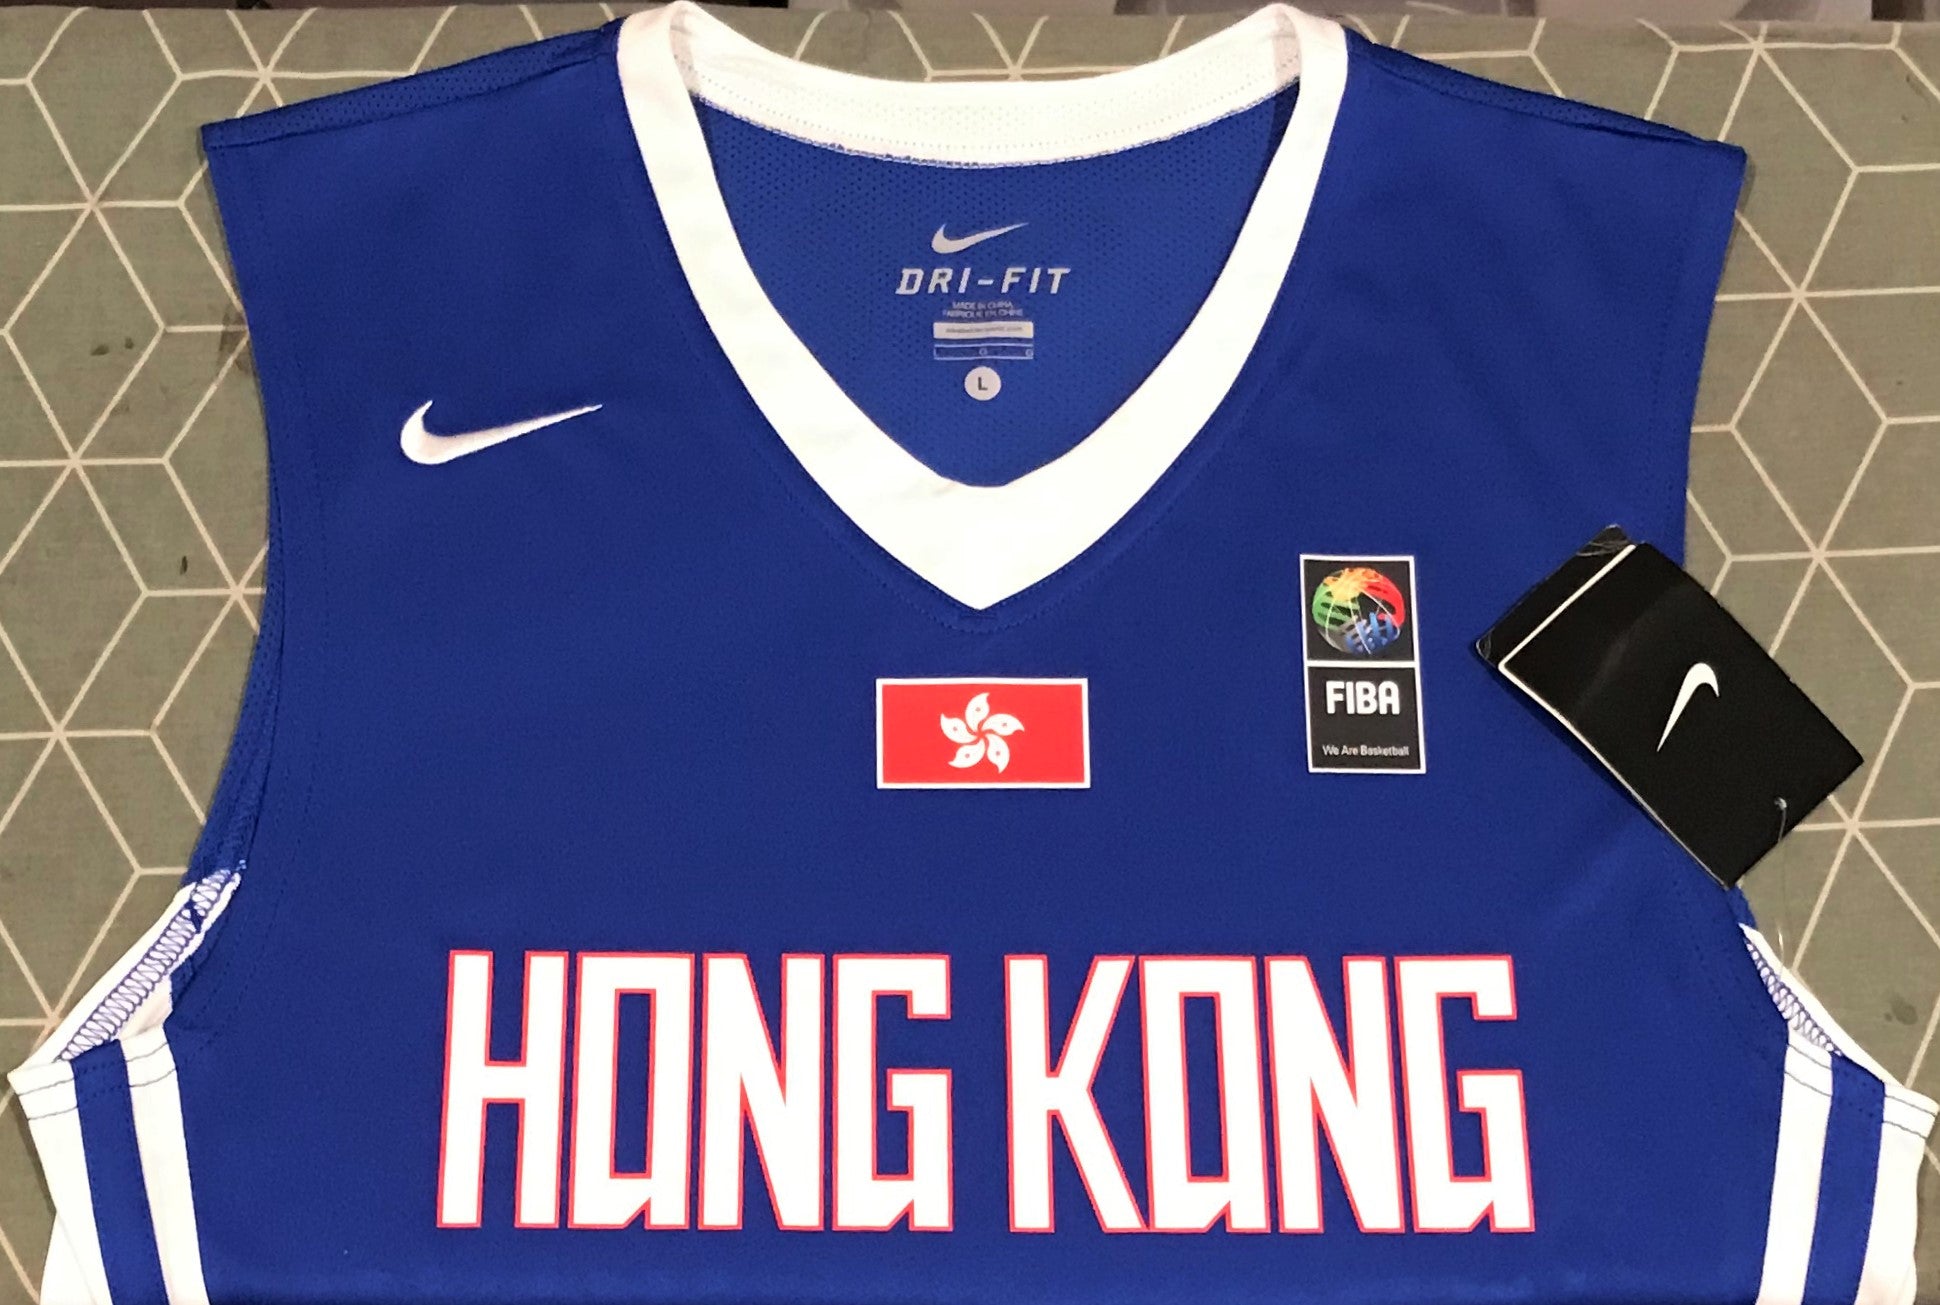 Hong Kong National Basketball Team 2017-19 Home Jersey/Shirt